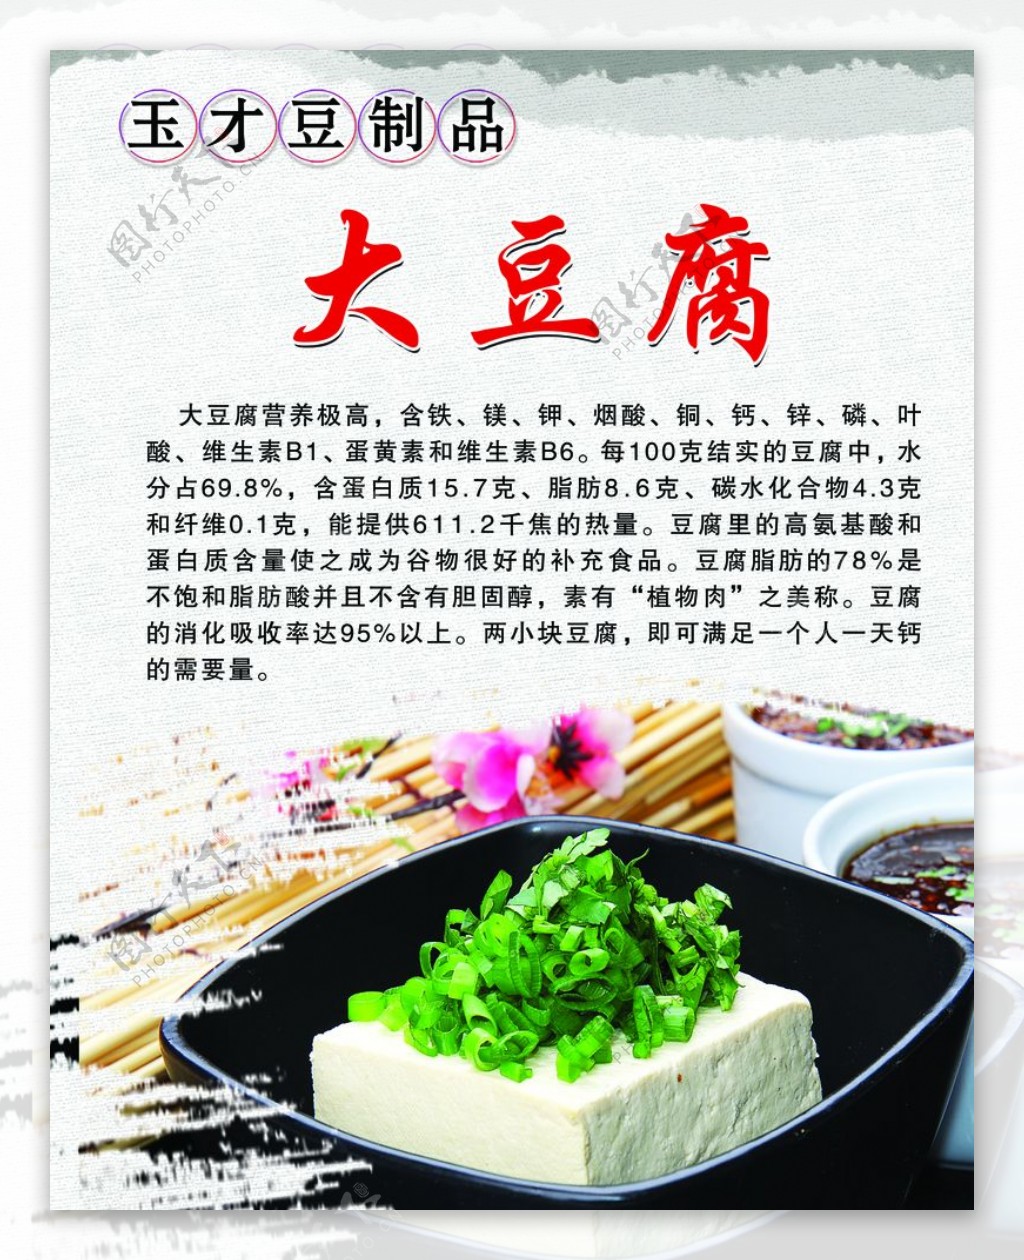 大豆腐图片